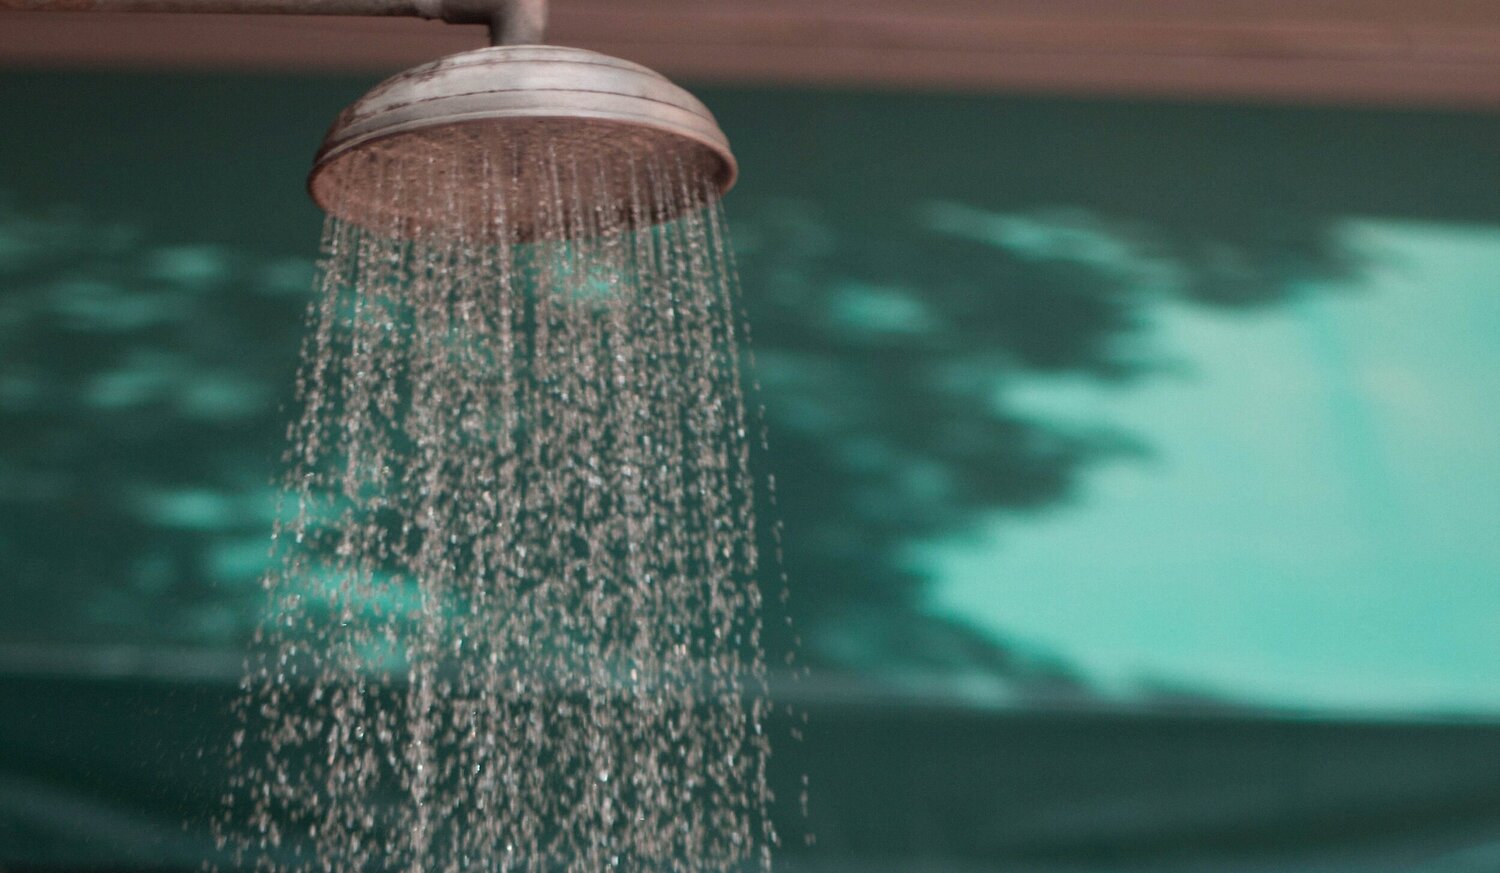 slijtage Catastrofe Woedend Waarom is koud douchen zo goed voor je? 7 voordelen